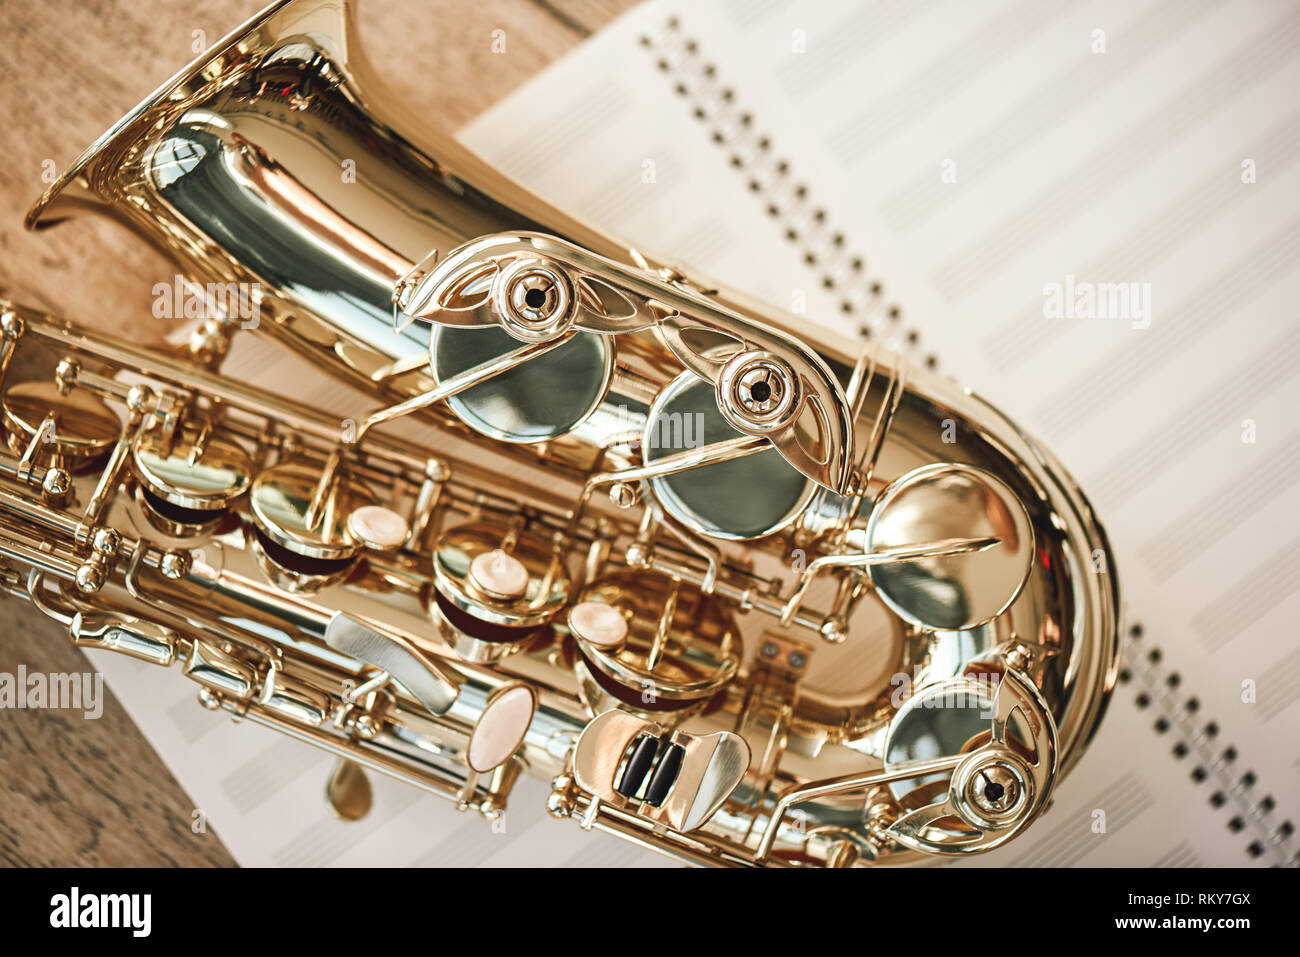 La gioia di sax. Vista superiore della bella shiny sassofono giacente su fogli di note musicali su pavimento di legno. Strumenti musicali. Attrezzature musicali. Foto Stock